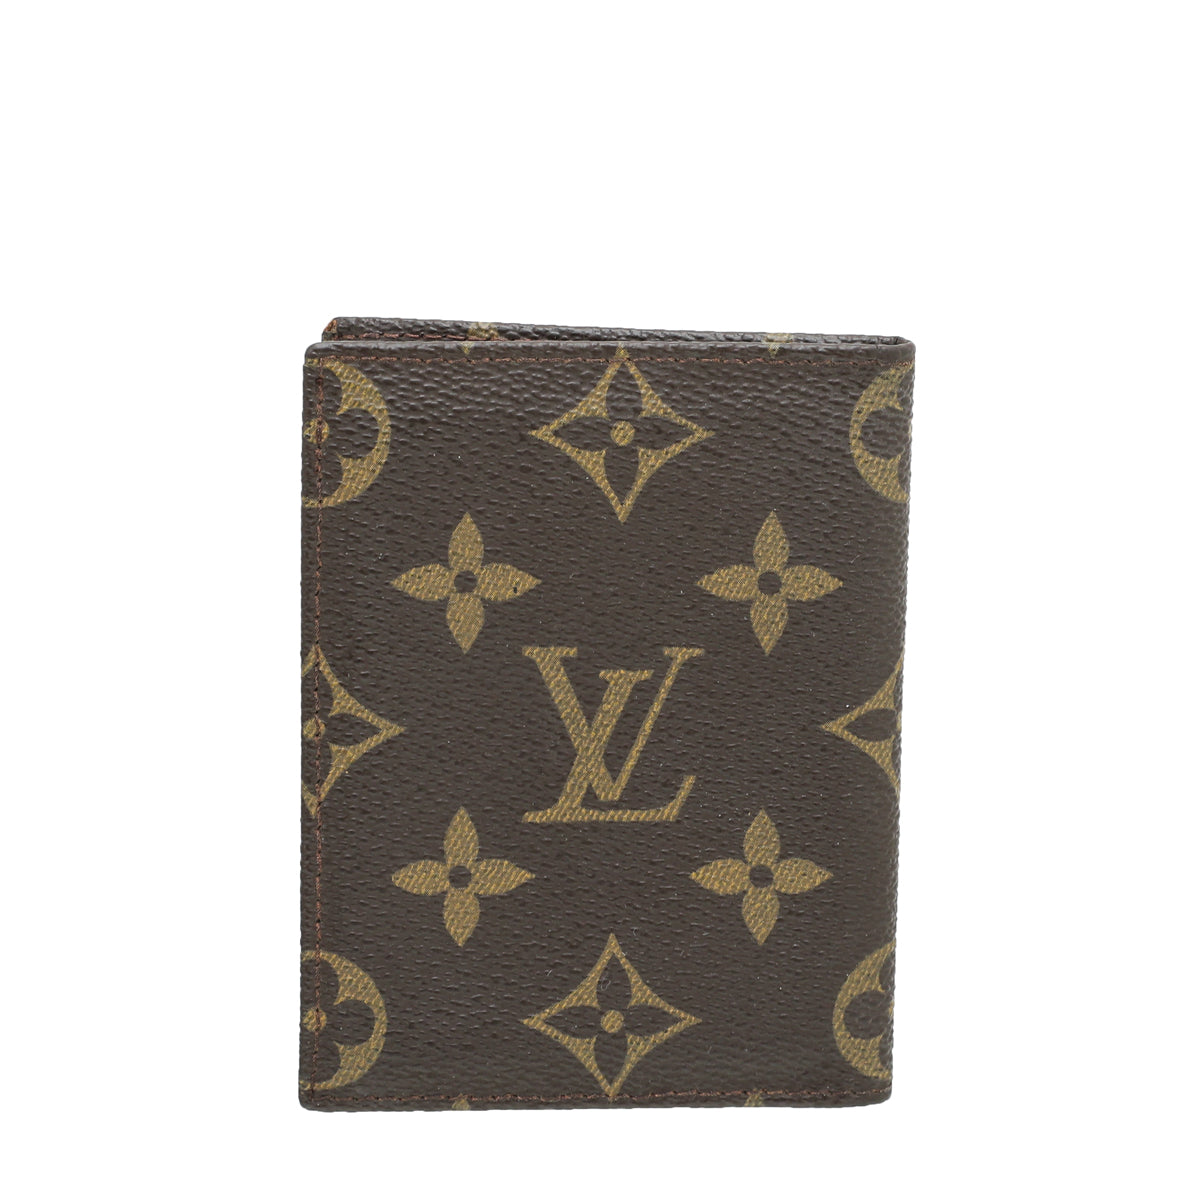 Louis Vuitton Damier Ebene Pince Money Clip Cardholder Louis